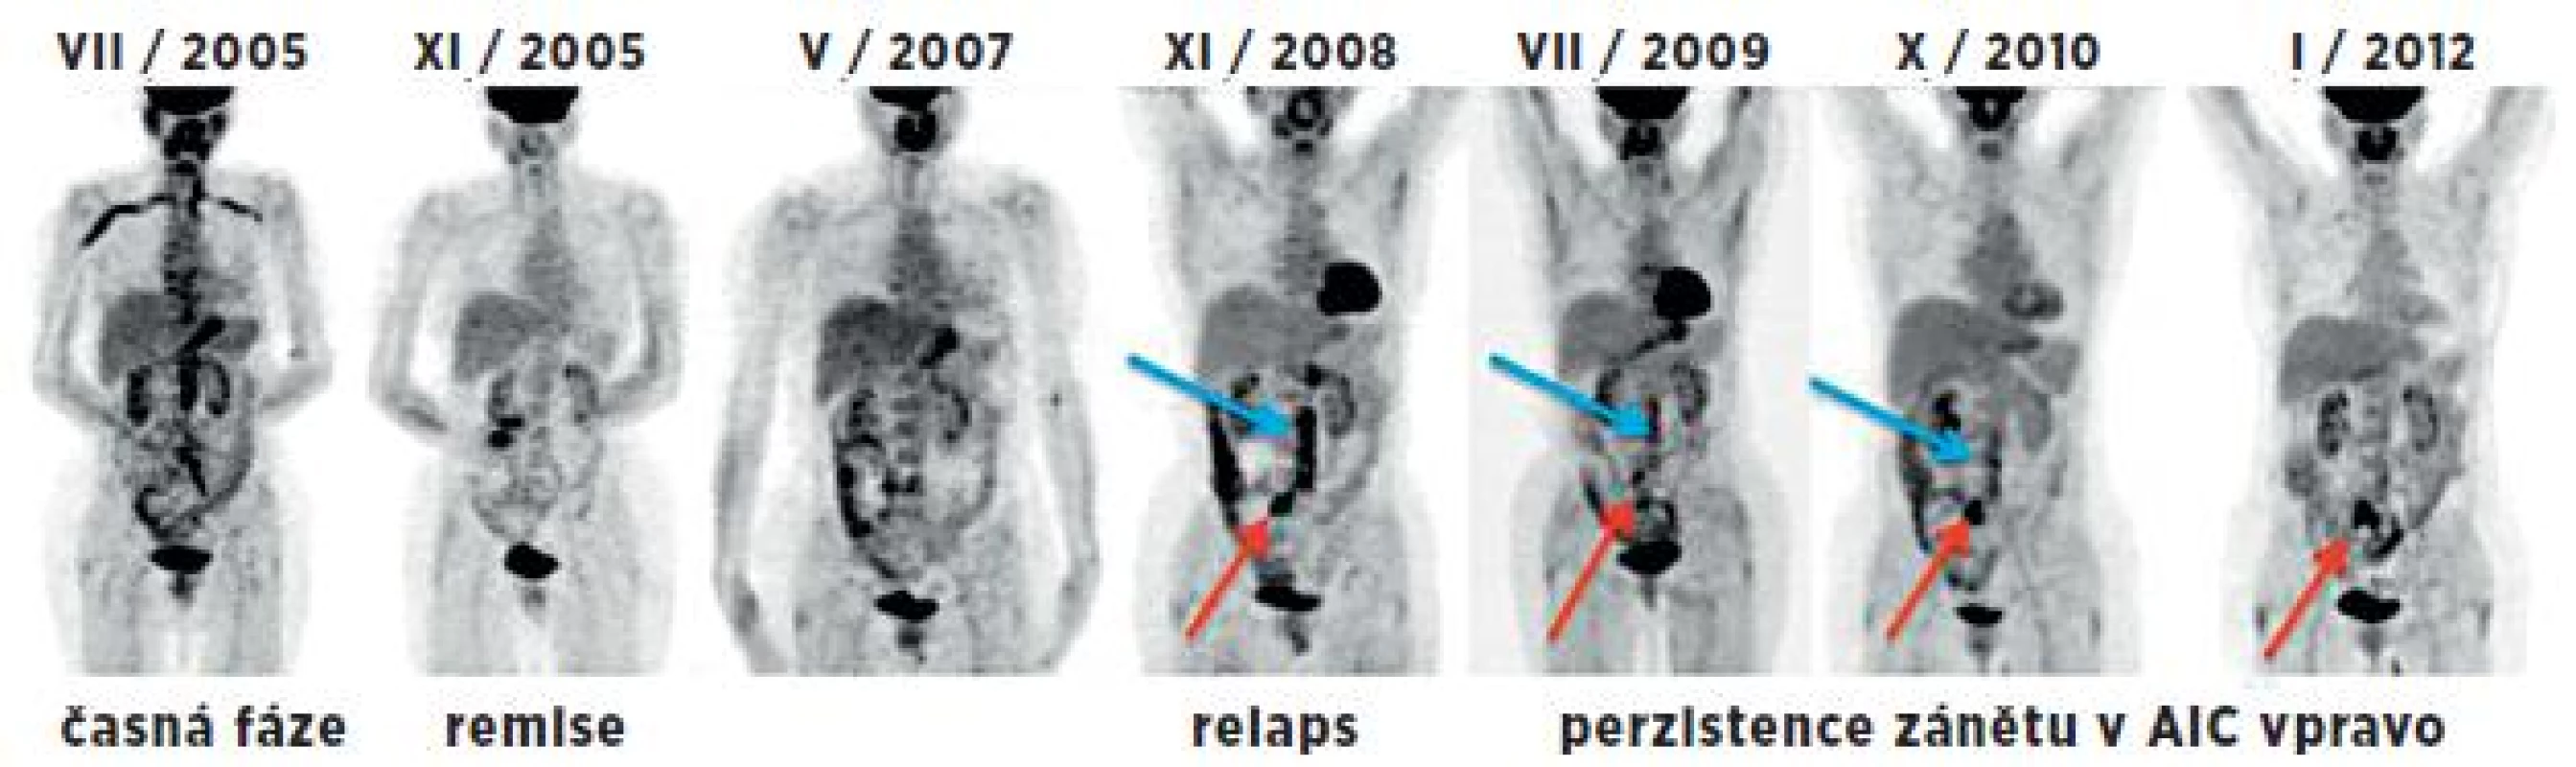 Souhrnný obraz 7 PET studií (MIP projekce) u 53leté pacientky v průběhu 6,5 let. Vlevo iniciální sken v časné fázi provázené elevací FW a CRP. Další 2 studie byly hodnoceny jako fáze remise při terapii prednisonem a po jejím ukončení. Následující studie odpovídají relapsu nemoci (v břišní aortě – modrá šipka a a. iliaca comm. l. dx. – červená šipka) v korelaci s klinickým nálezem, i laboratorními parametry. Při imunosupresivní terapii přechodně pokles s následným vzestupem akumulace FDG v těchto tepnách. I přes kombinovanou imunosupresivní terapii (cyklosporin A, methotrexát, prednison) je na poslední studii patrná perzistující vysoká metabolická aktivita ve společné ilické tepně vpravo – nález pravděpodobně odpovídá chronické fázi onemocnění.